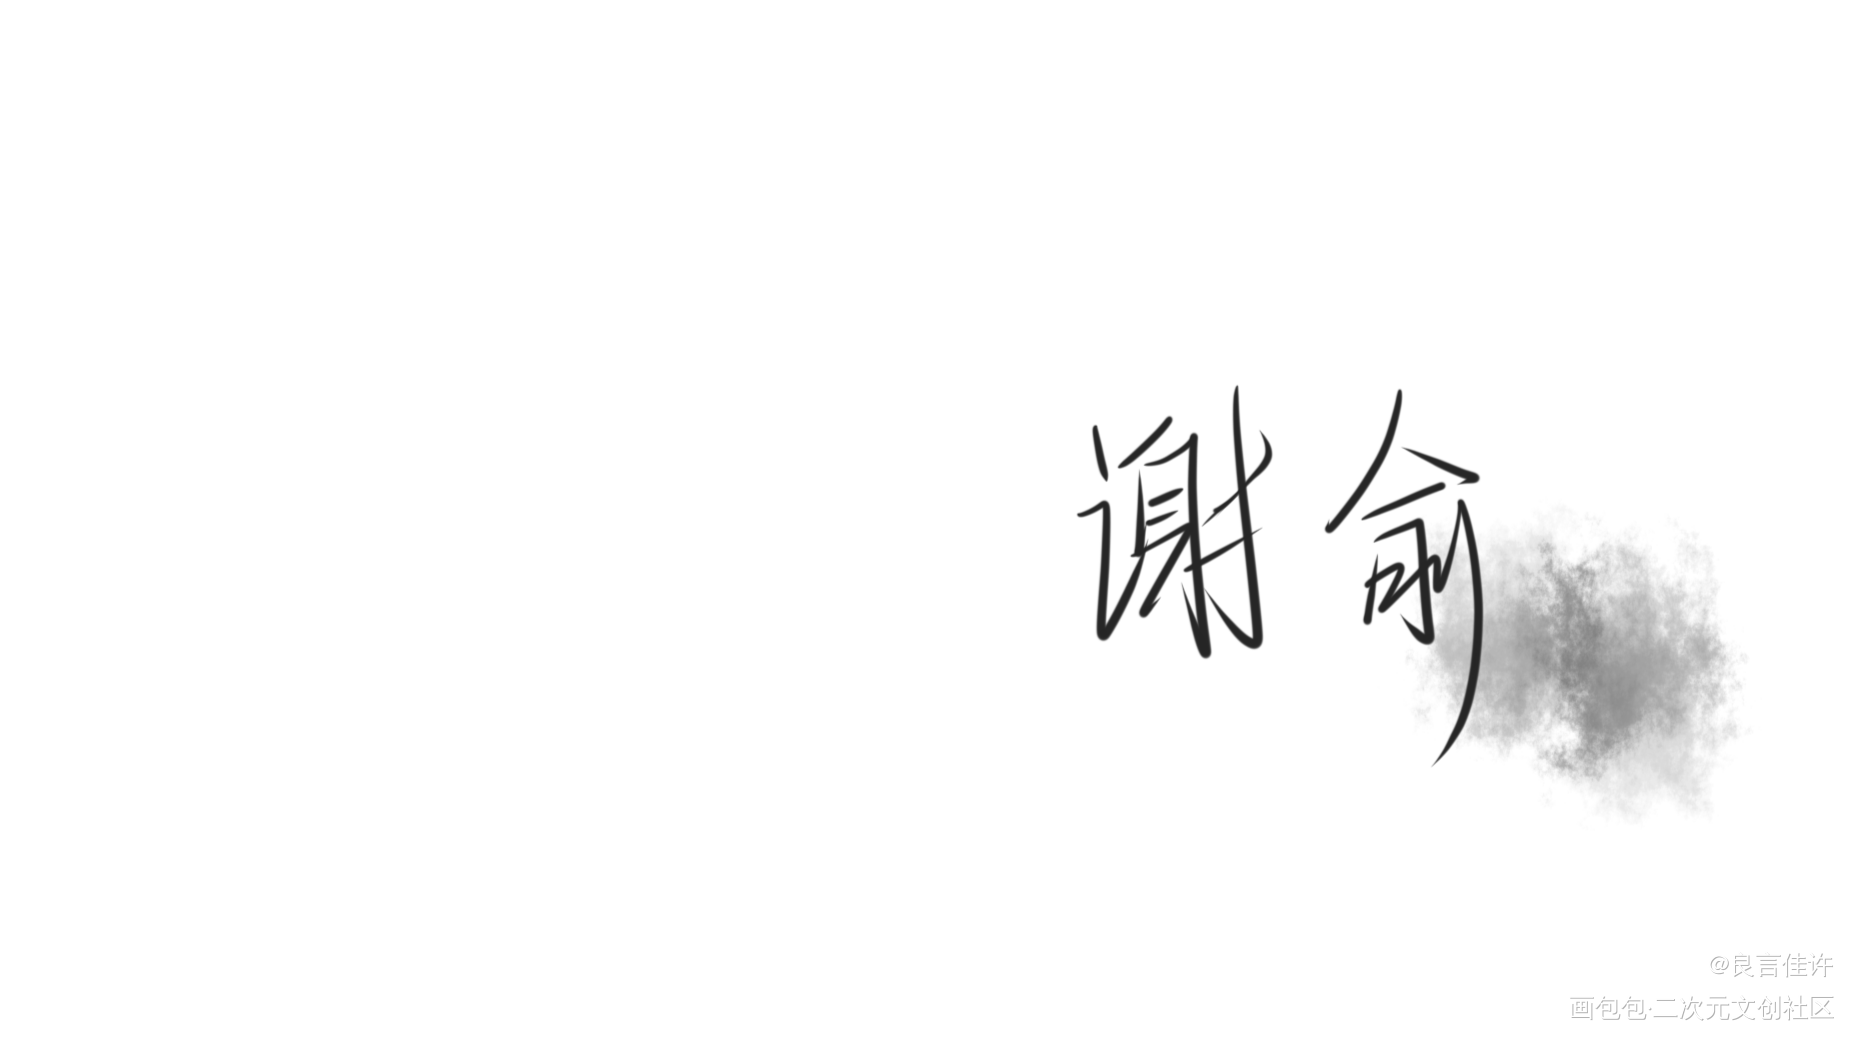 『谢俞』_伪装学渣数位板手写朝俞见字如晤绘画作品